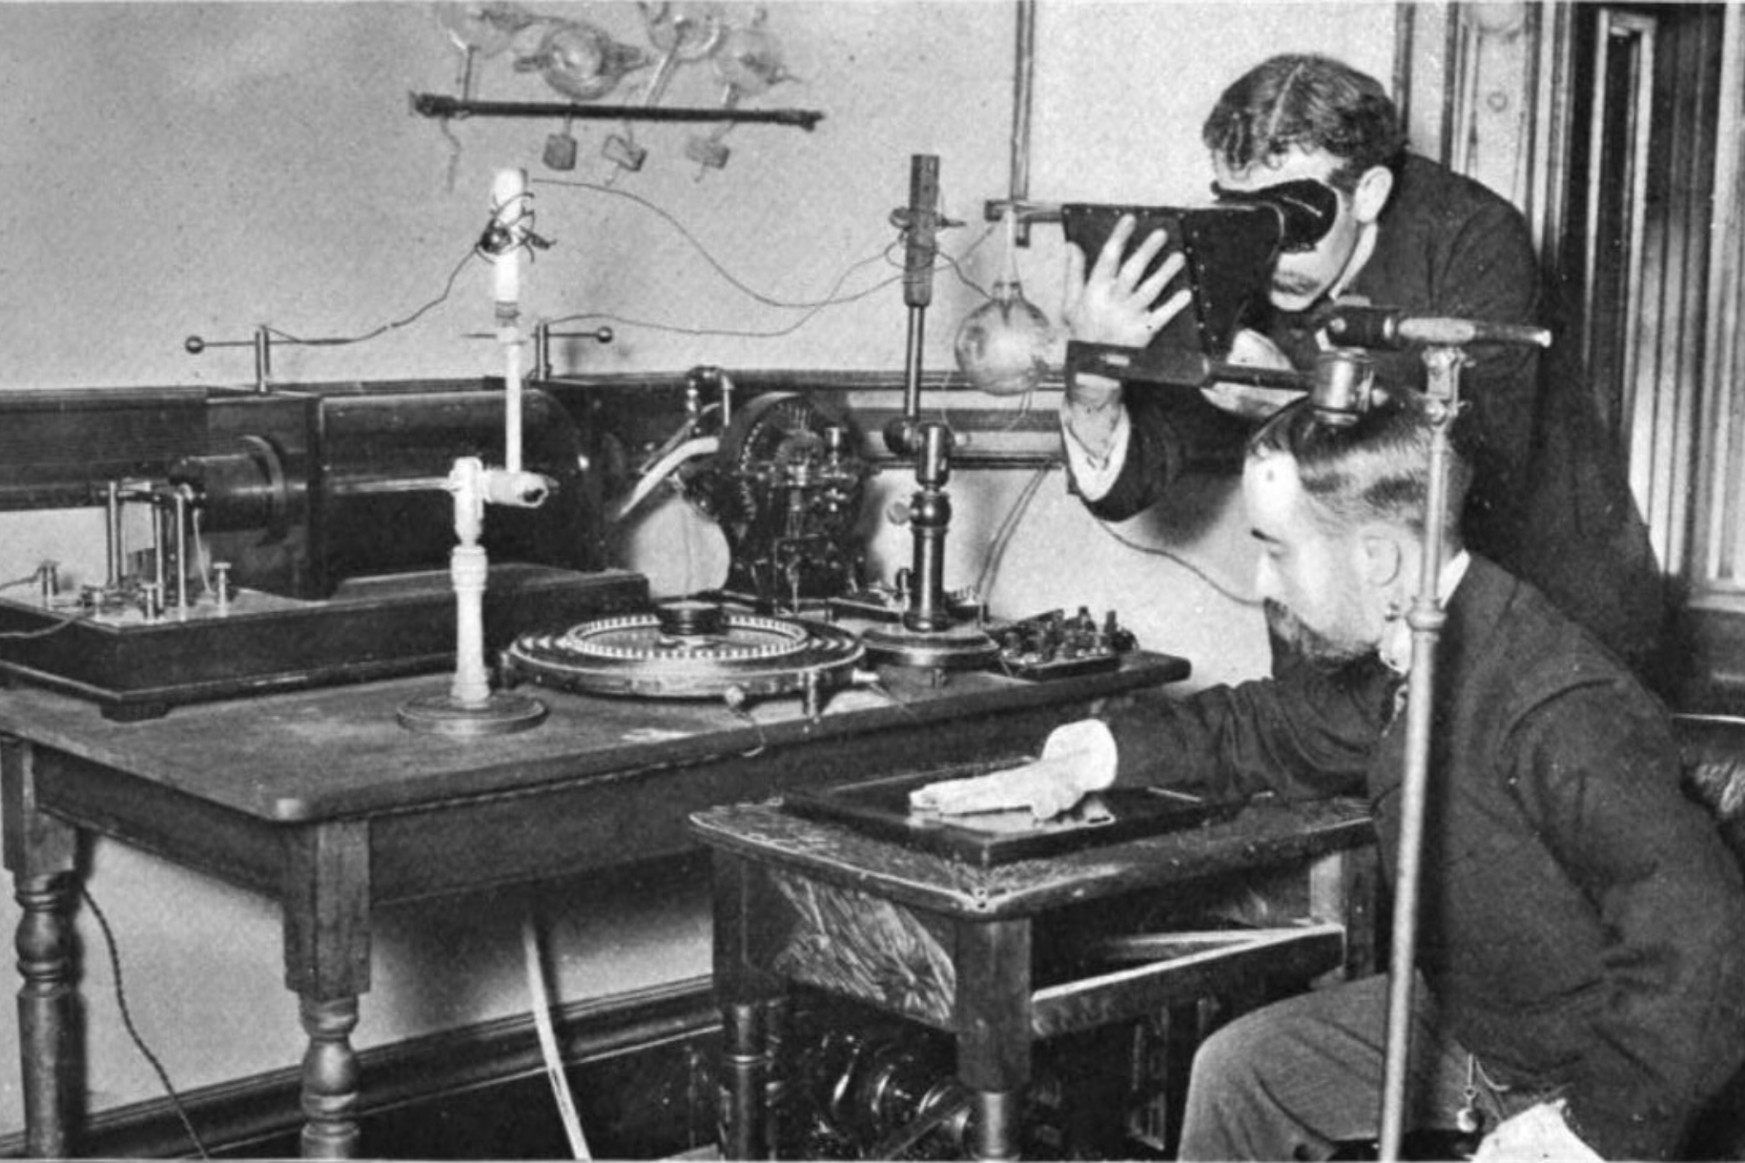 A 19. század végén pont olyan őrület volt a röntgengép, mint pár éve a Pokémon Go